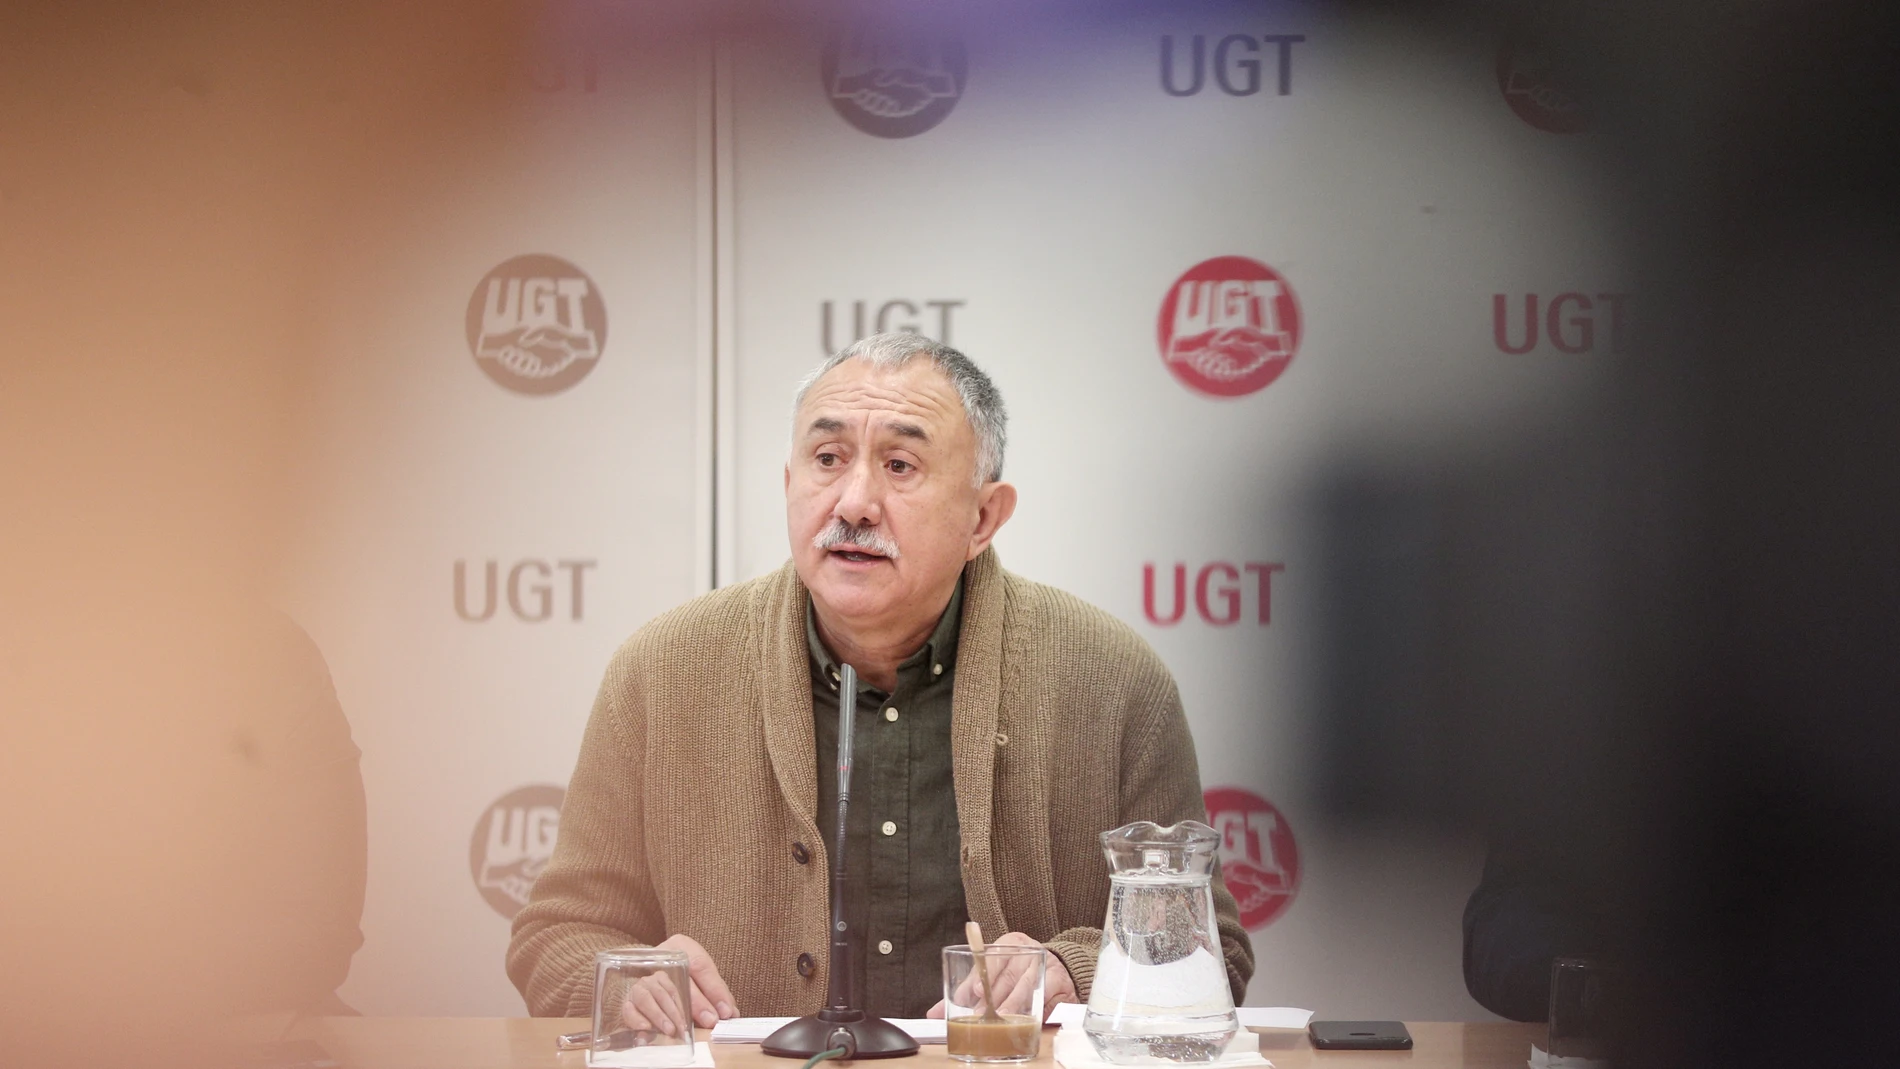 El secretario general de UGT, Pepe Álvarez, ofrece una rueda de prensa en Madrid para presentar las principales líneas de actuación